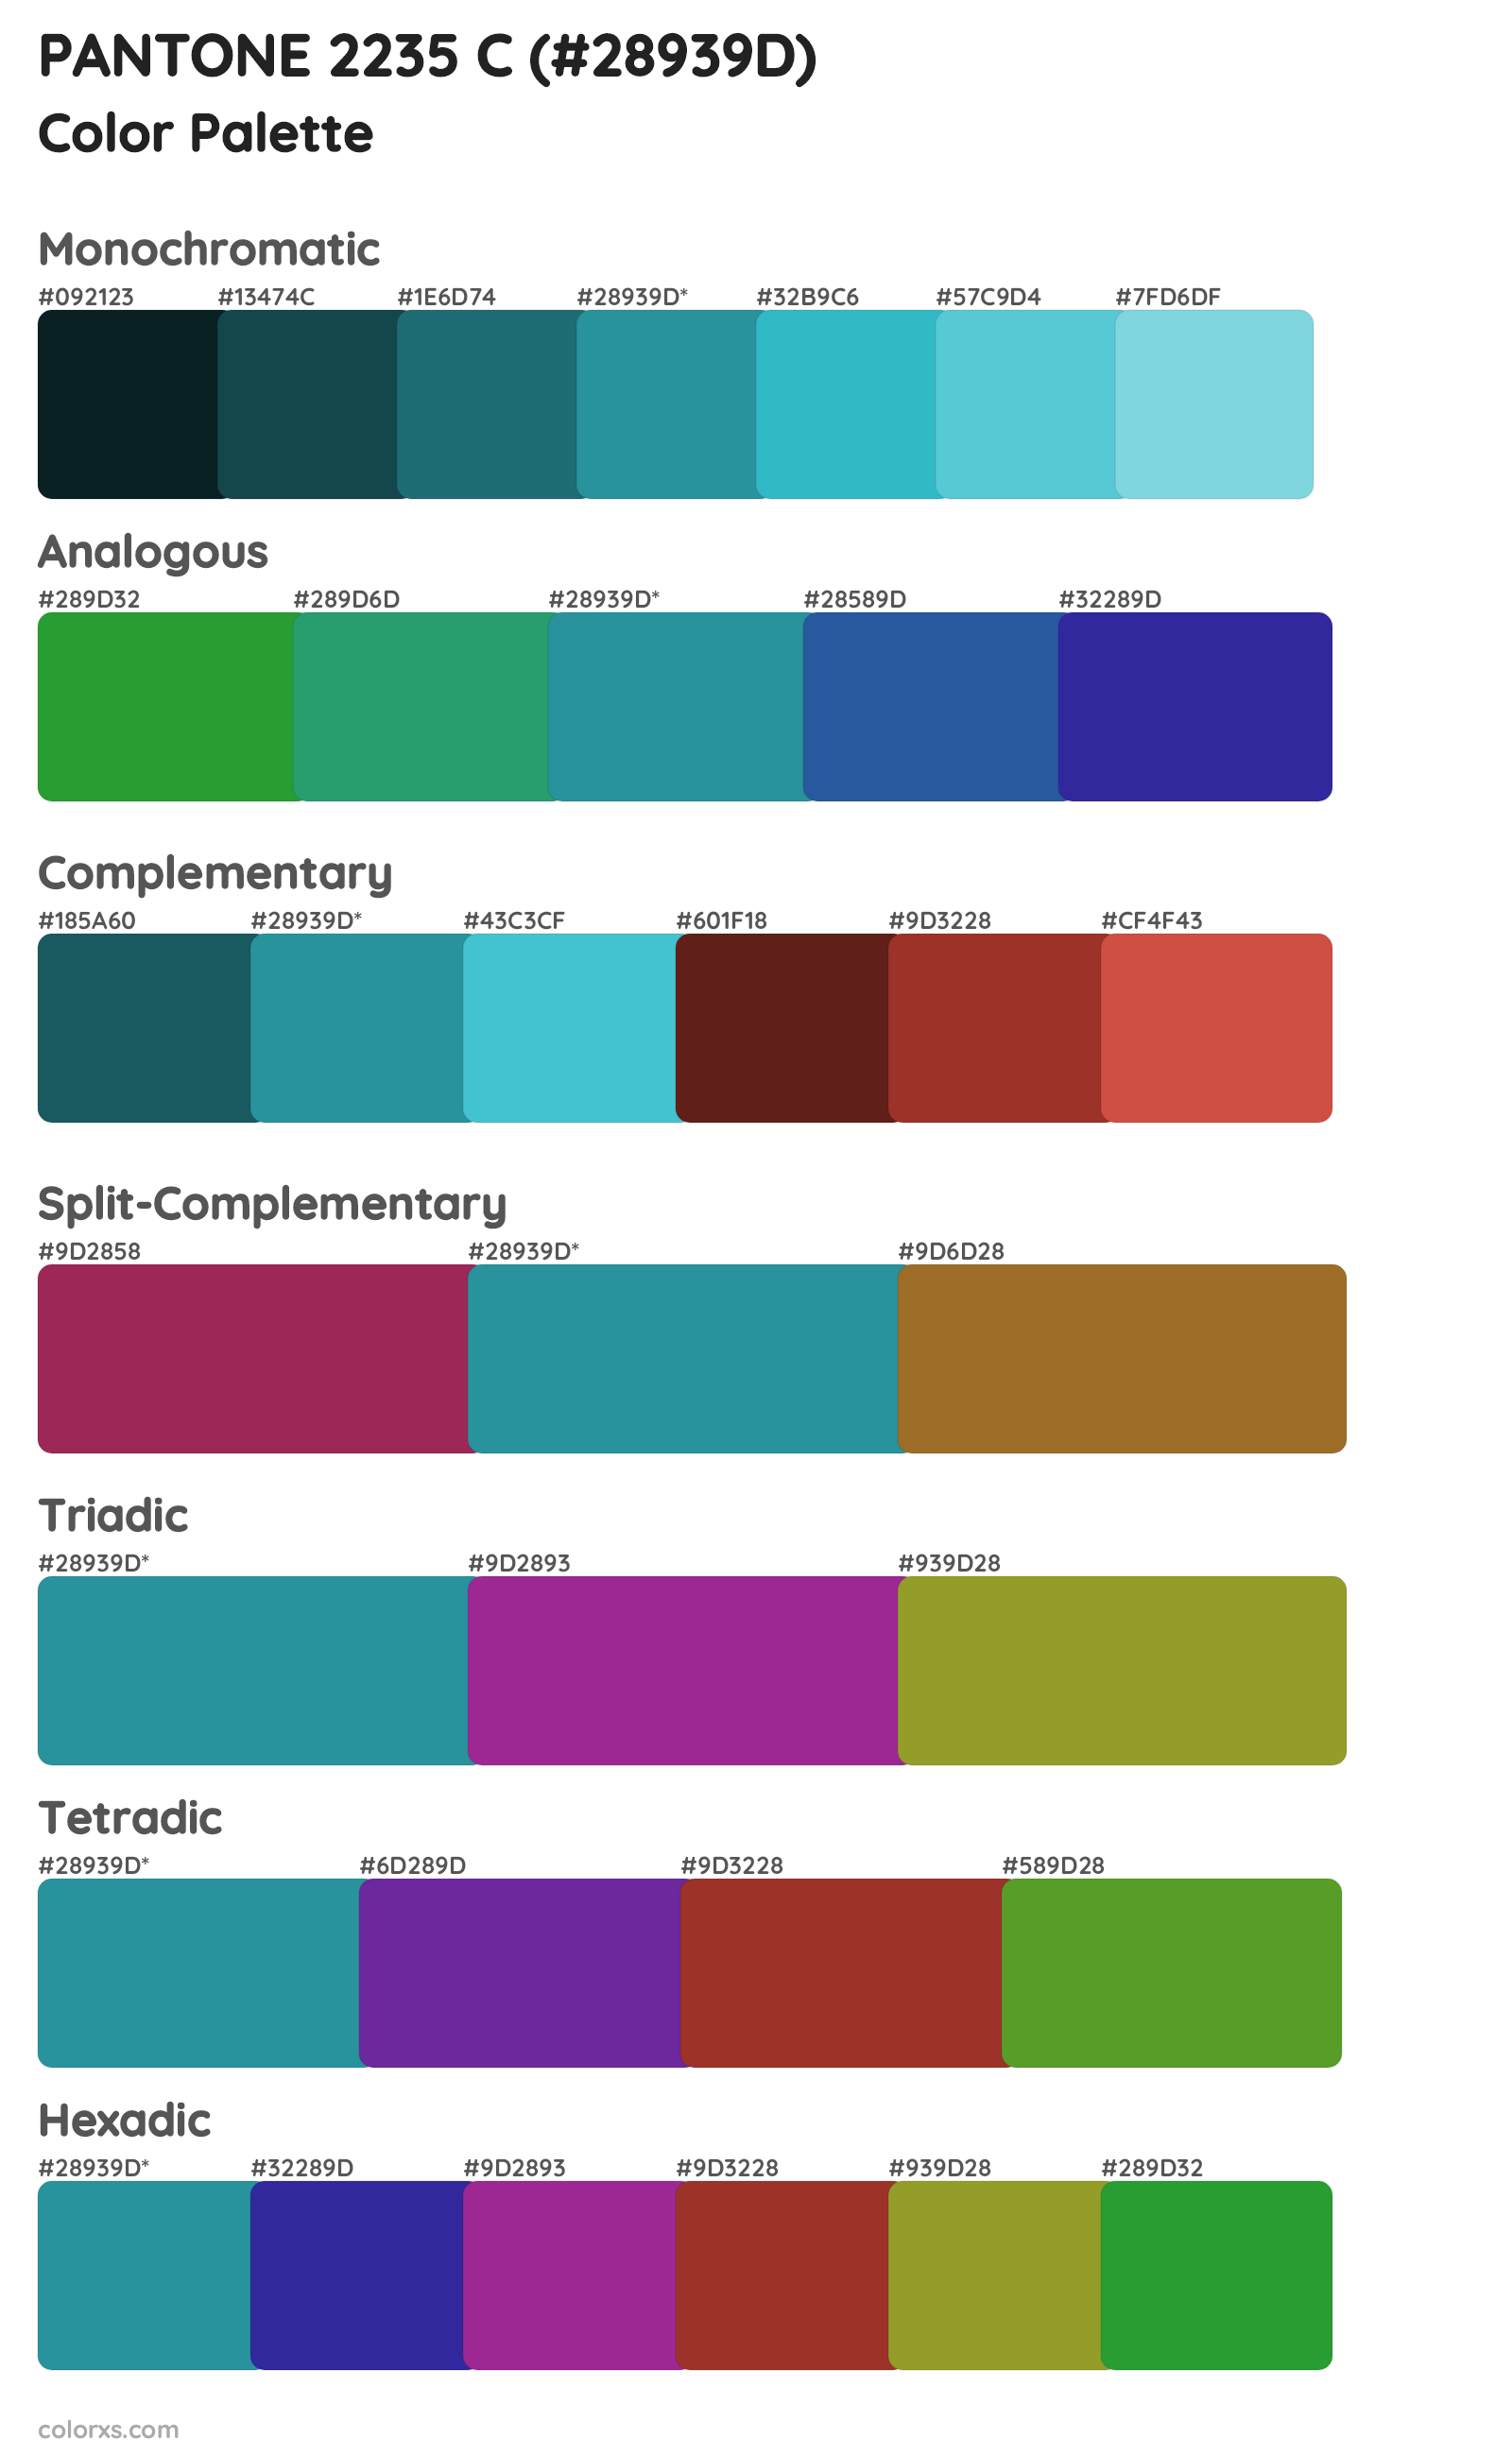 PANTONE 2235 C Color Scheme Palettes